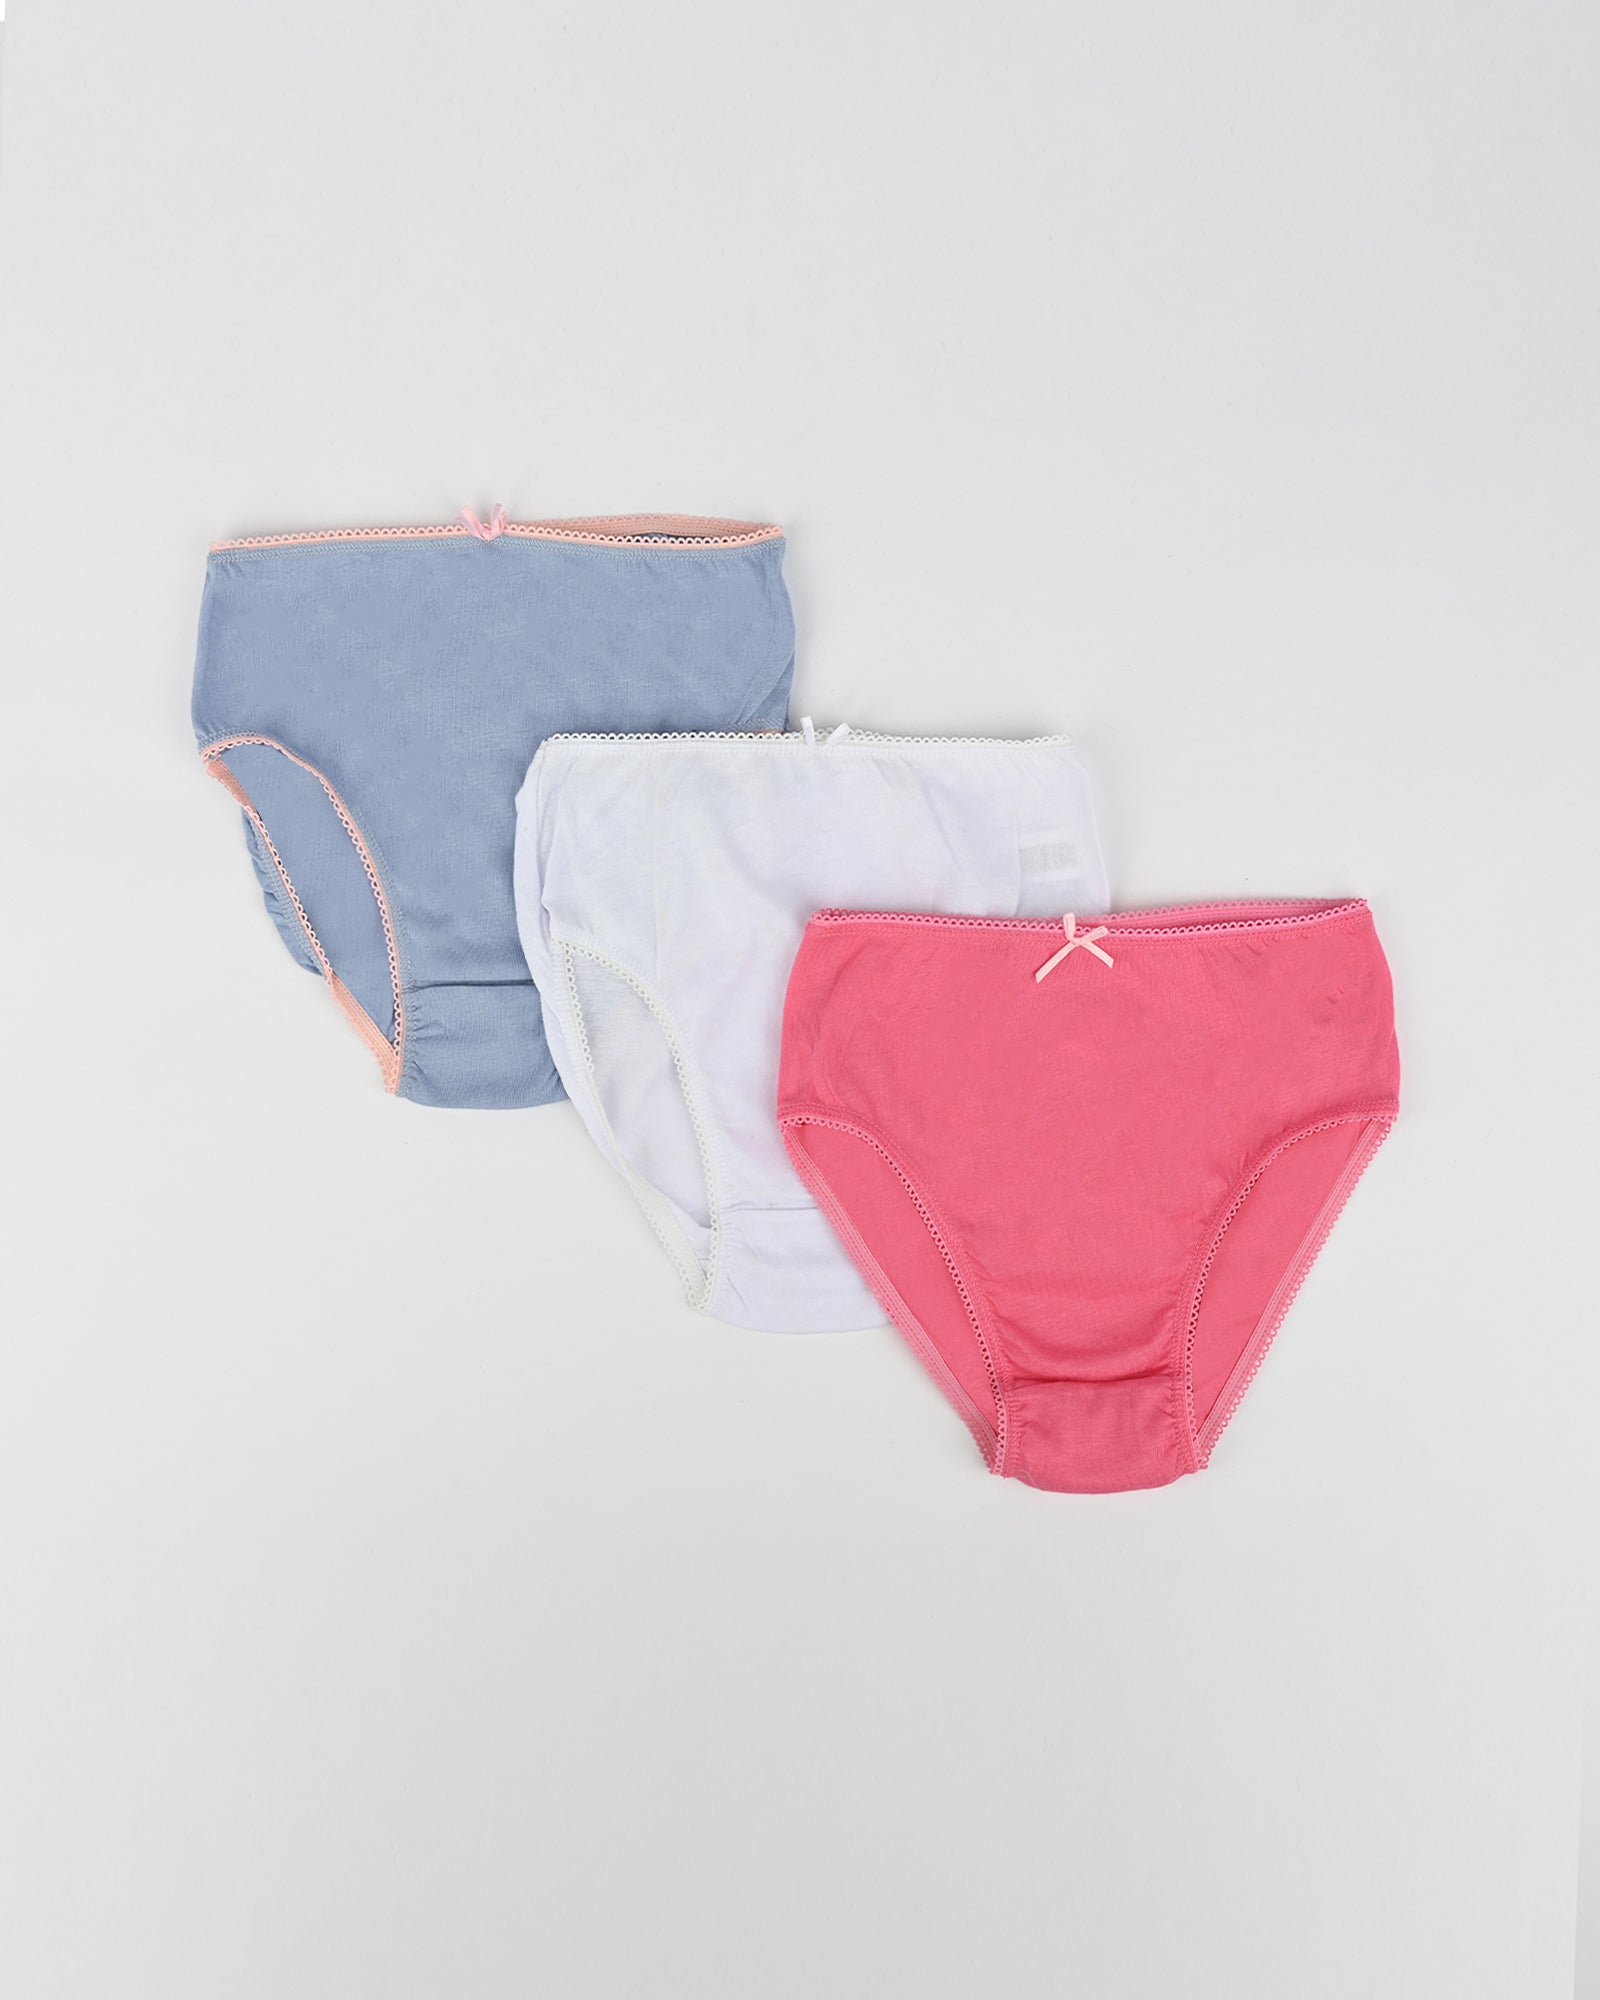 Girls 3 piece panties set